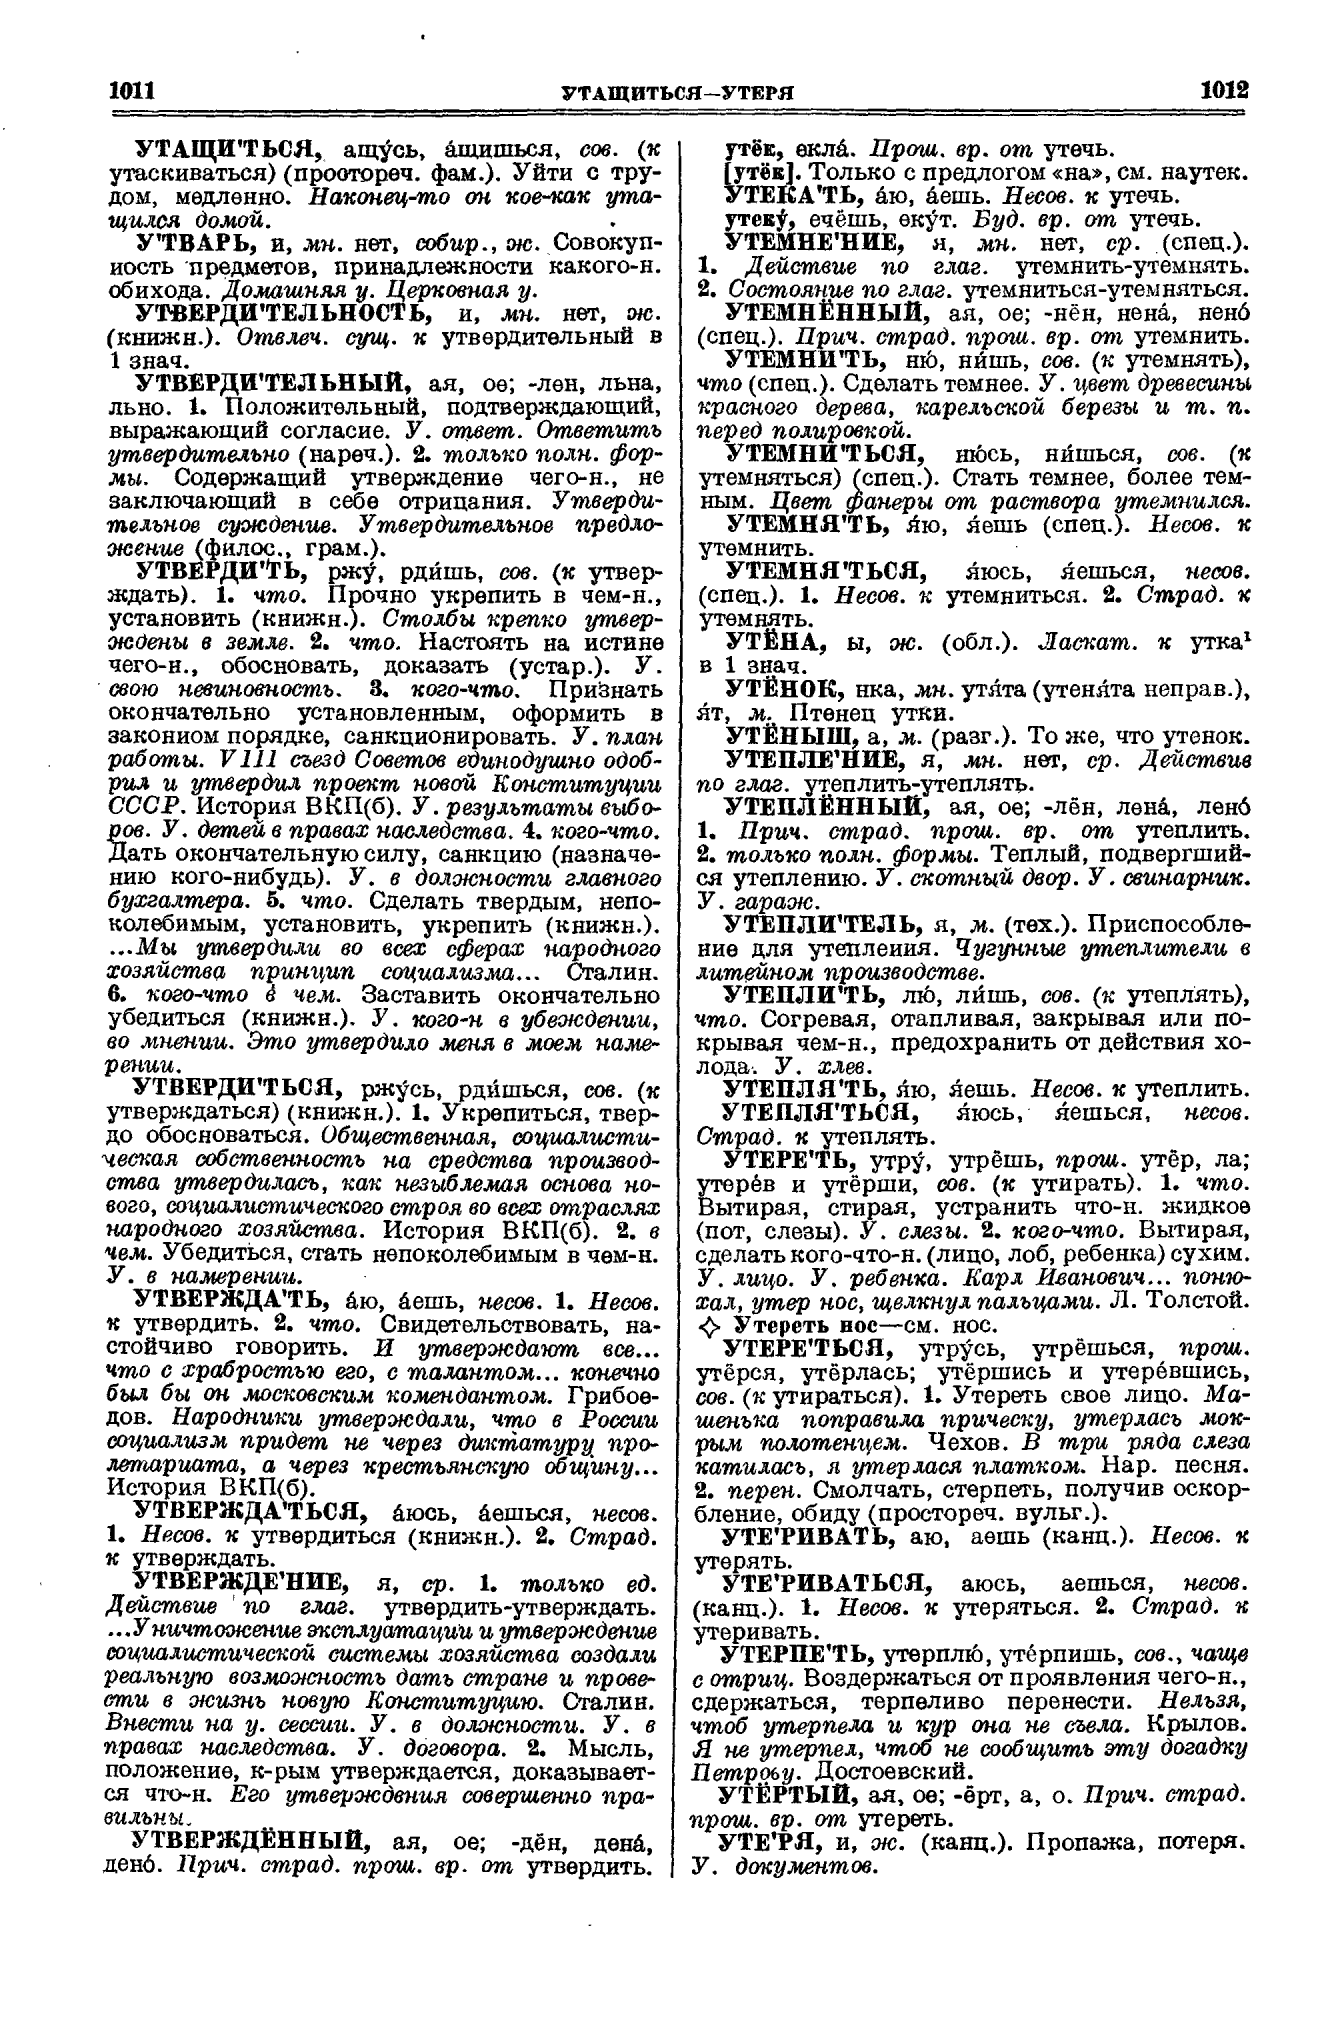 Фотокопия pdf / скан страницы 506 толкового словаря Ушакова (том 1)